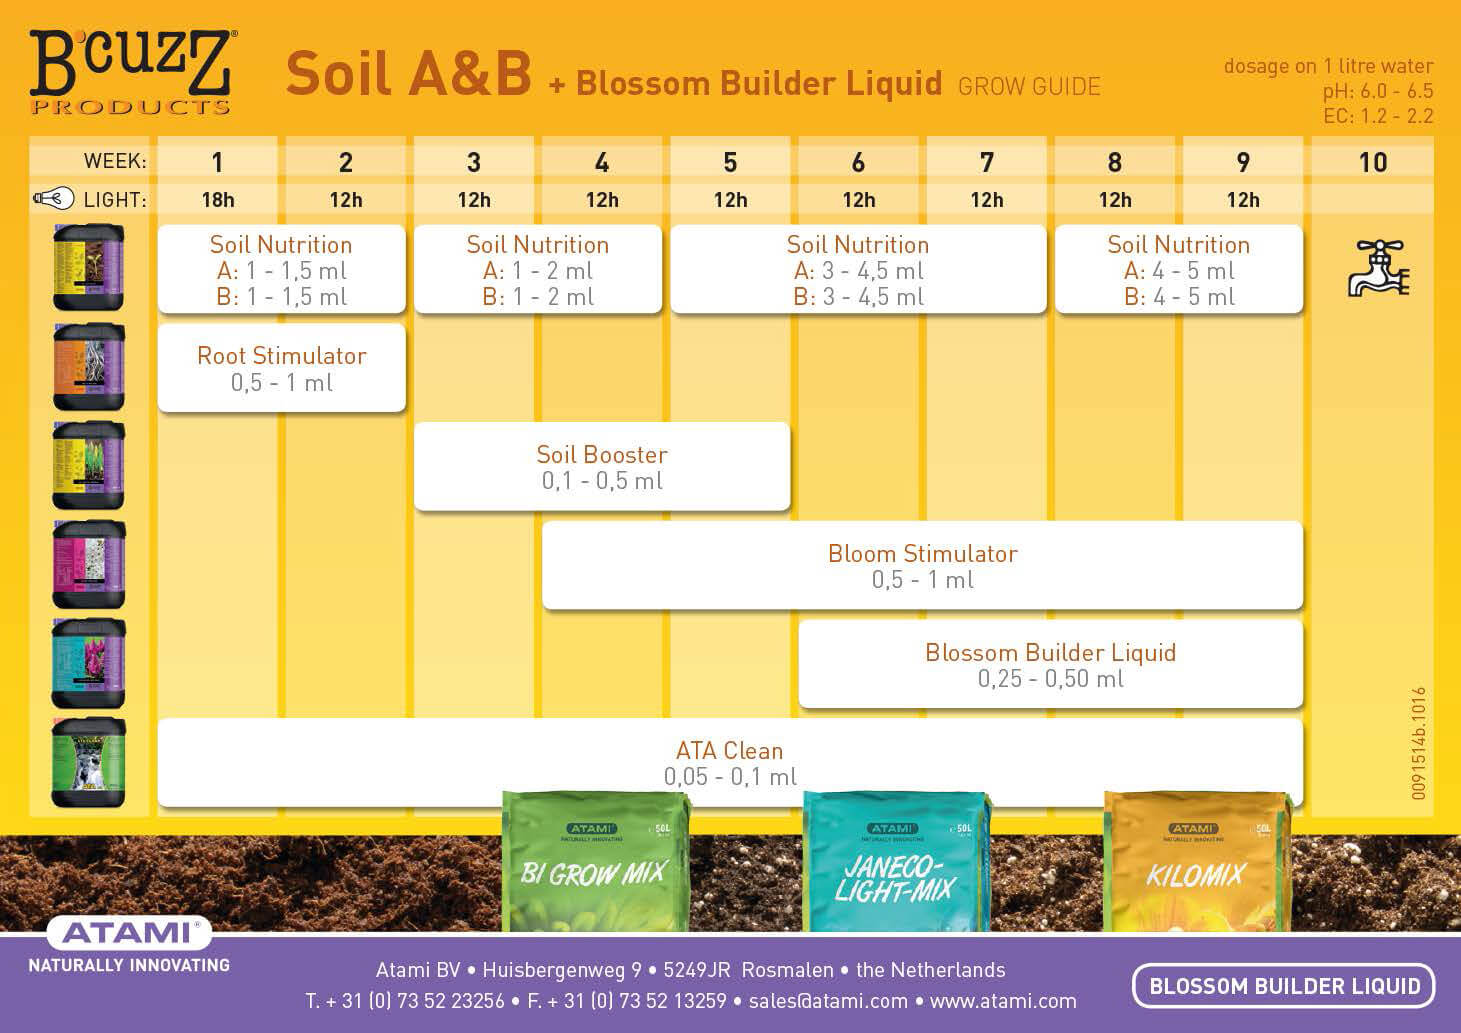 bcuzz-soil-a-b-blossom-builder-liquid